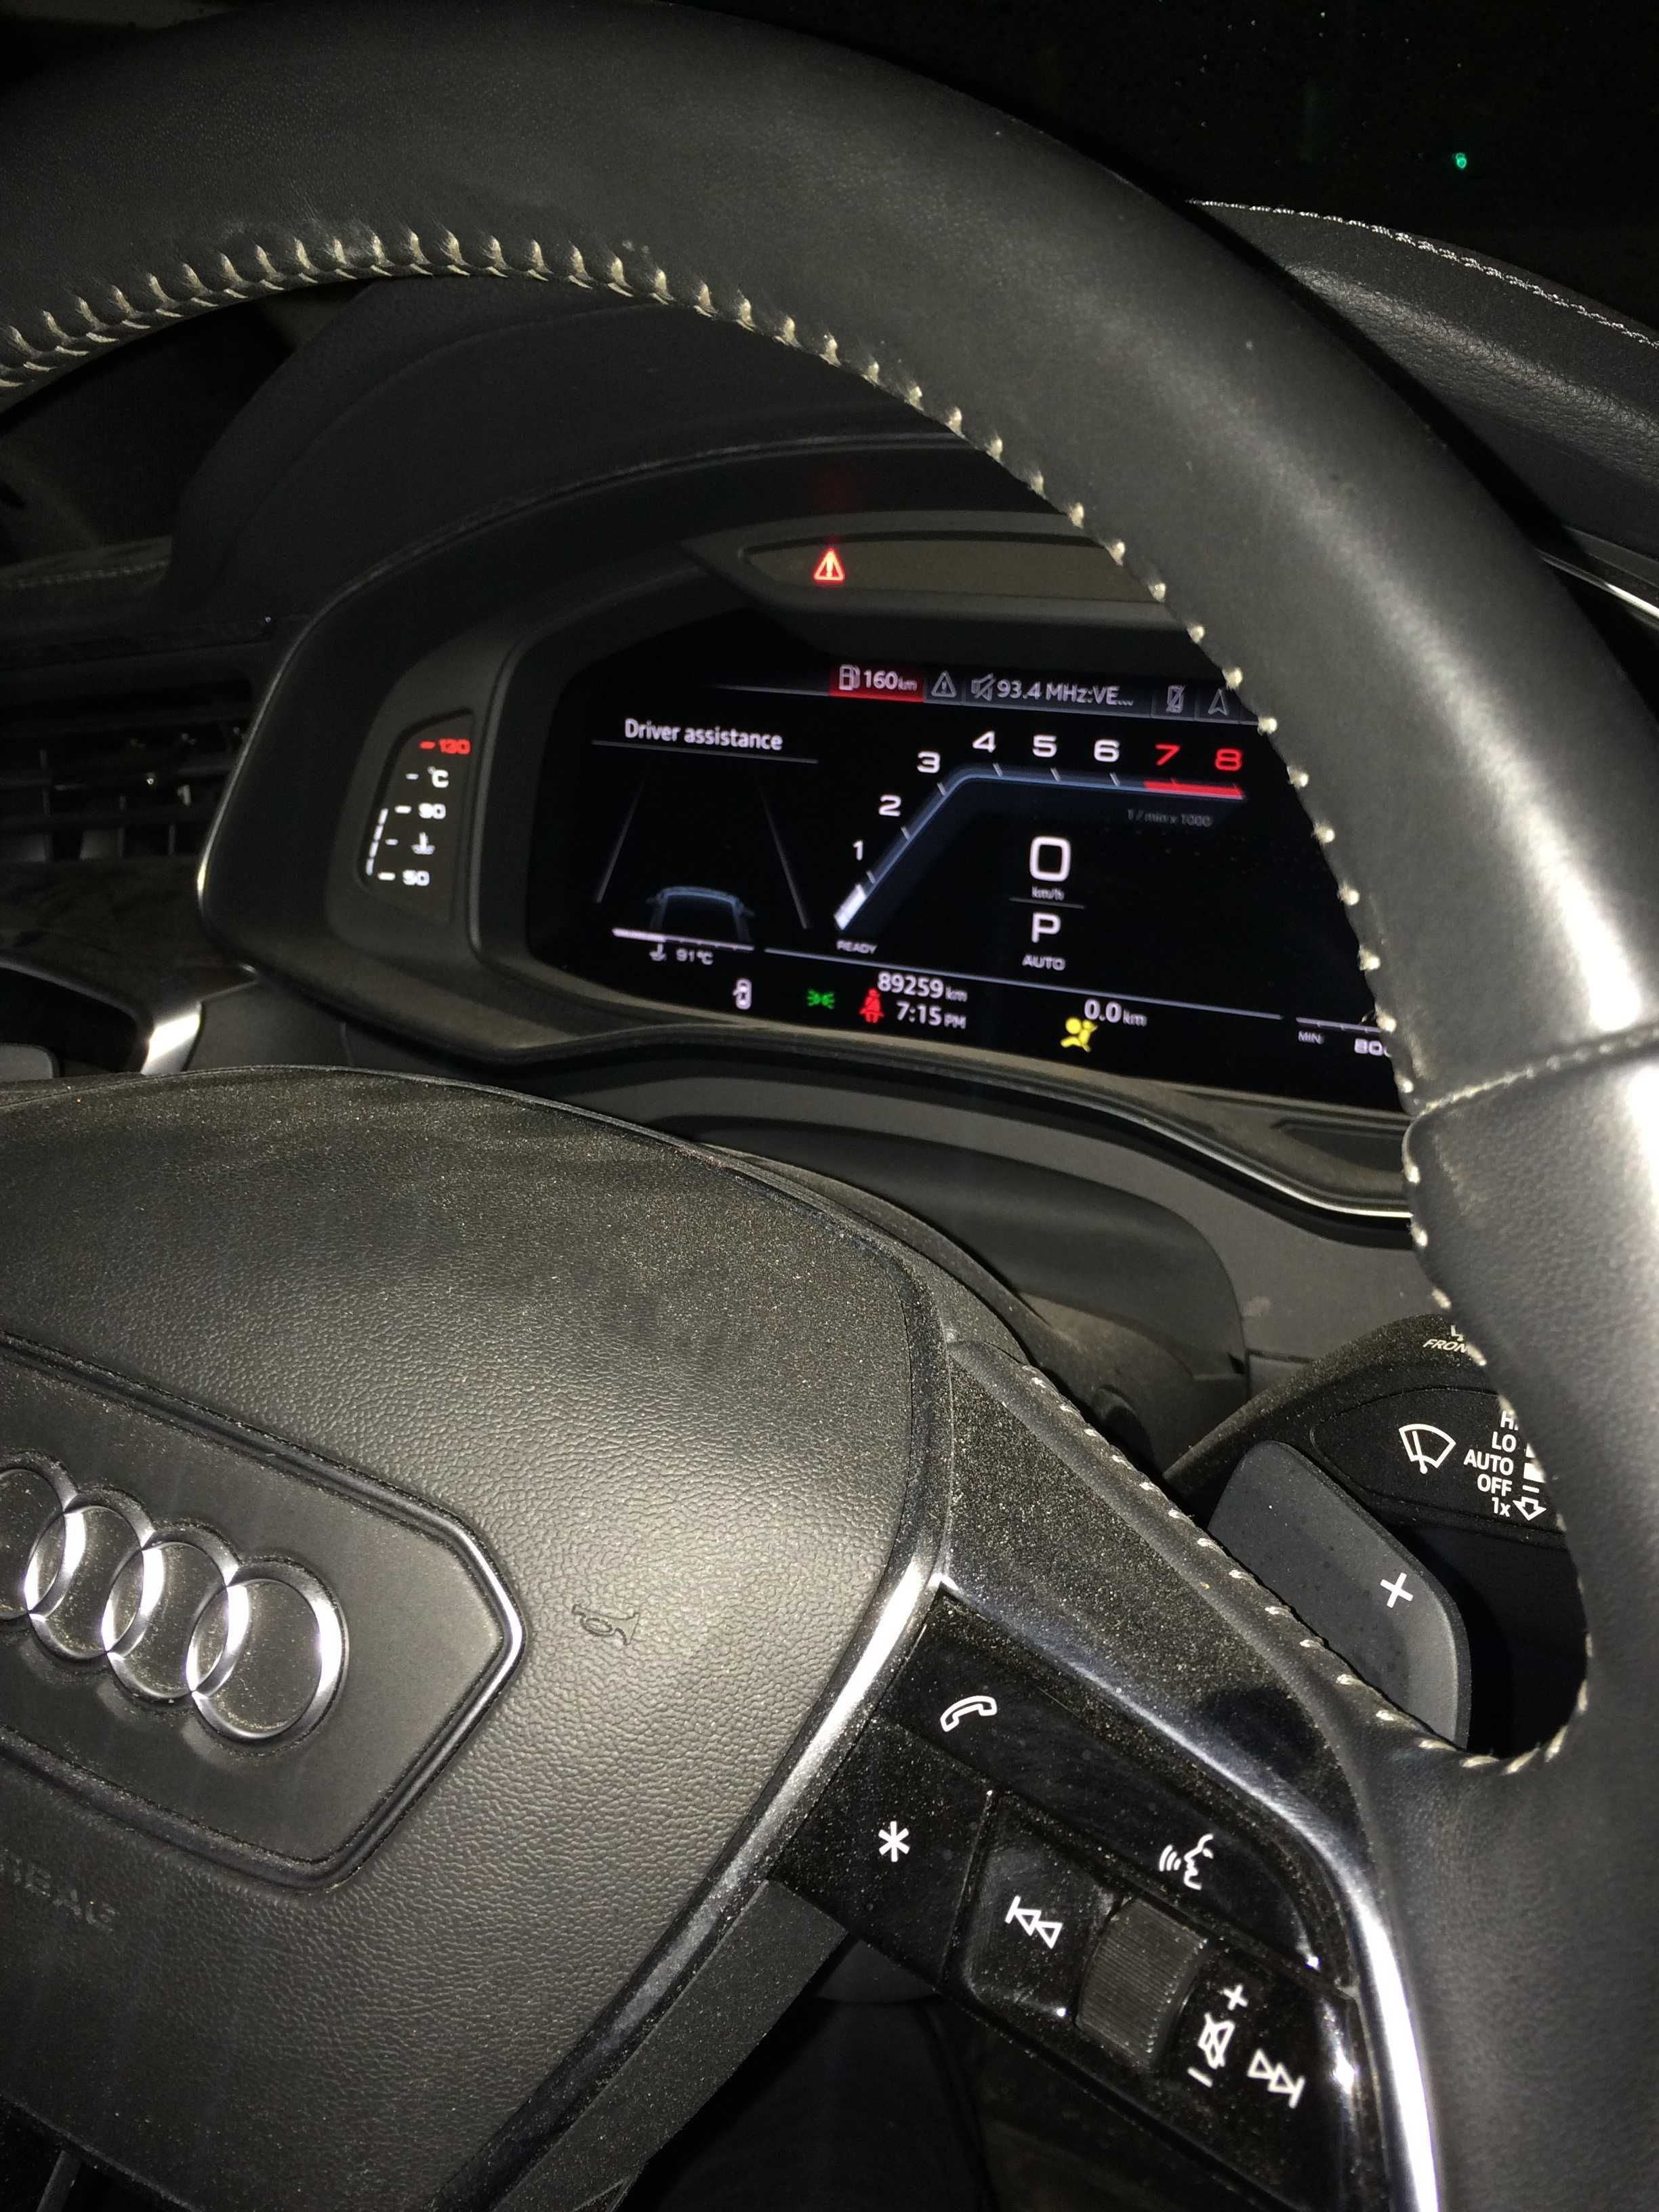 Audi RS Cockpit Gen2 Активиране Спортен Километраж Audi Mh2p Bulgaria